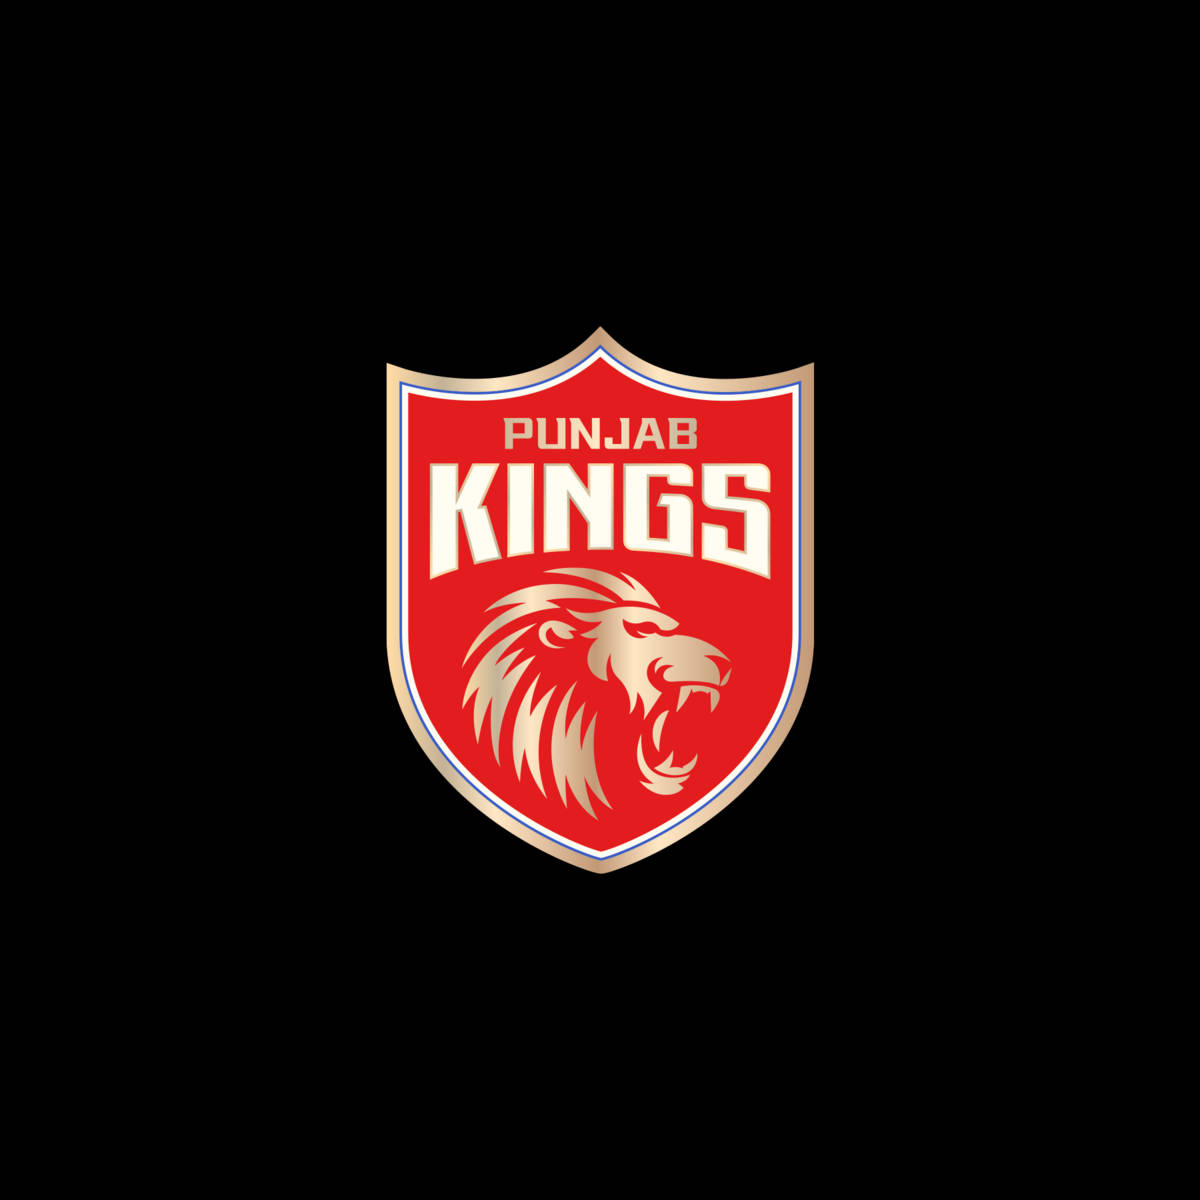 Red Punjab Kings Shield Logo Background